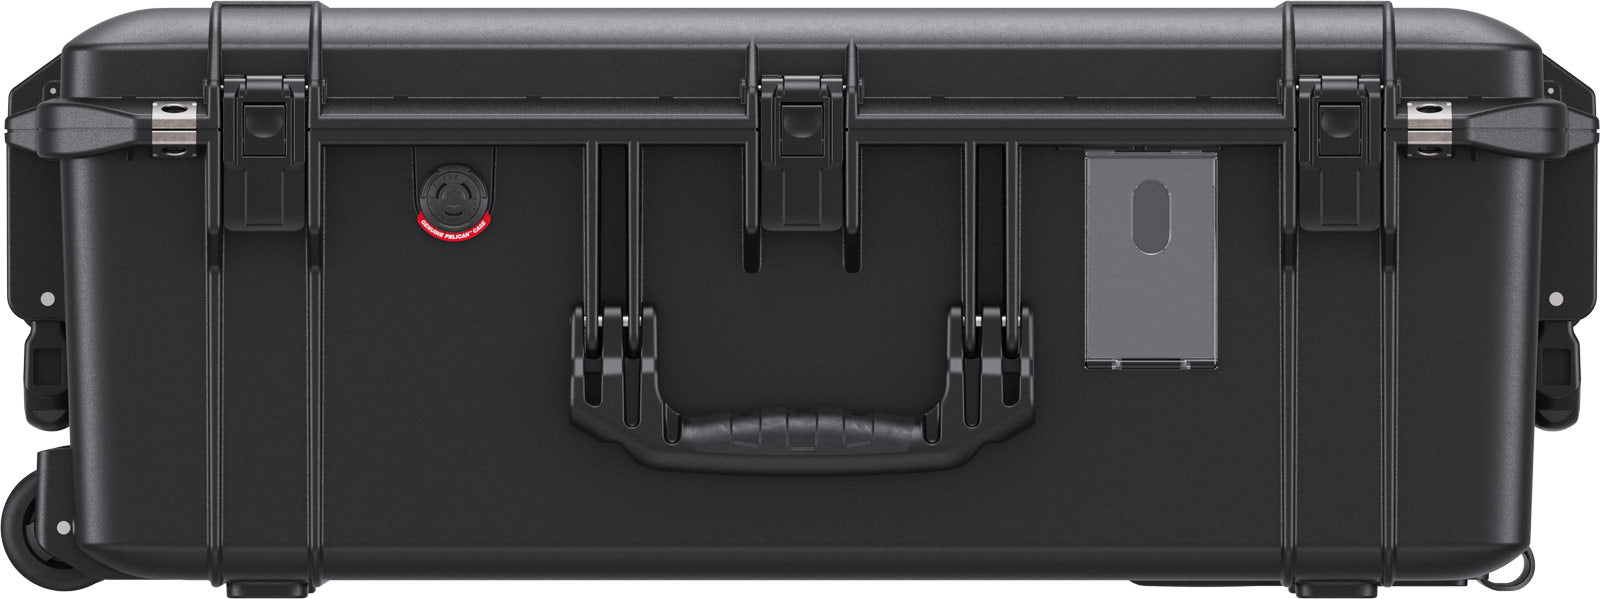 Pelican Cases - 1595 Air Case - Internal dimensions: 650 x 382 x 229cm